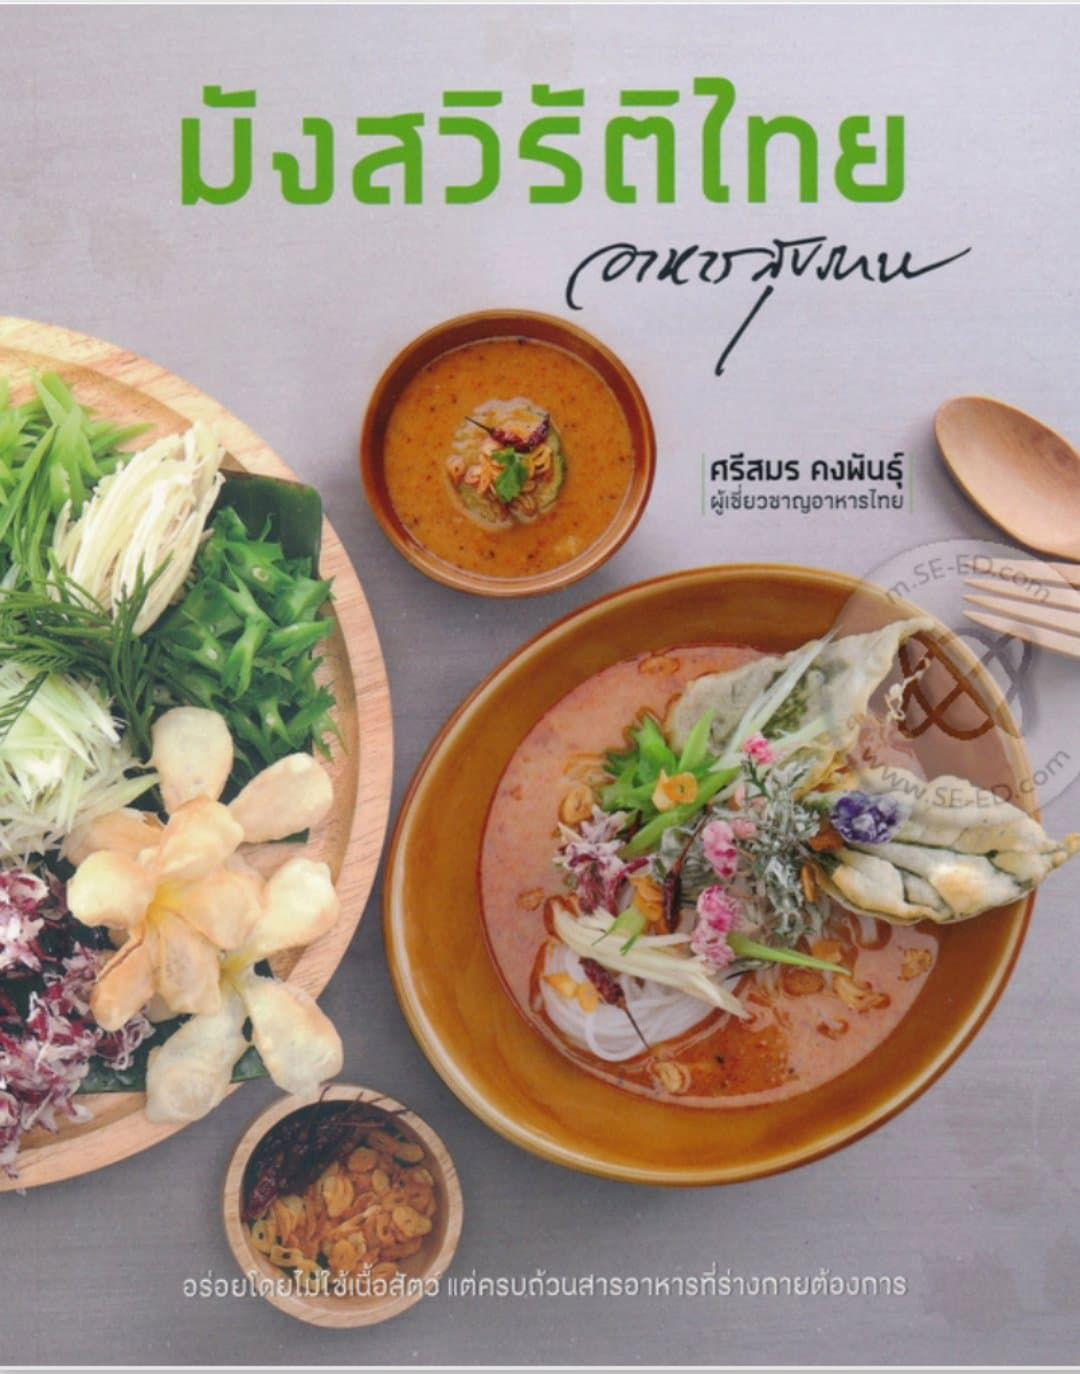 มังสวิรัติไทย :อาหารสุขภาพ